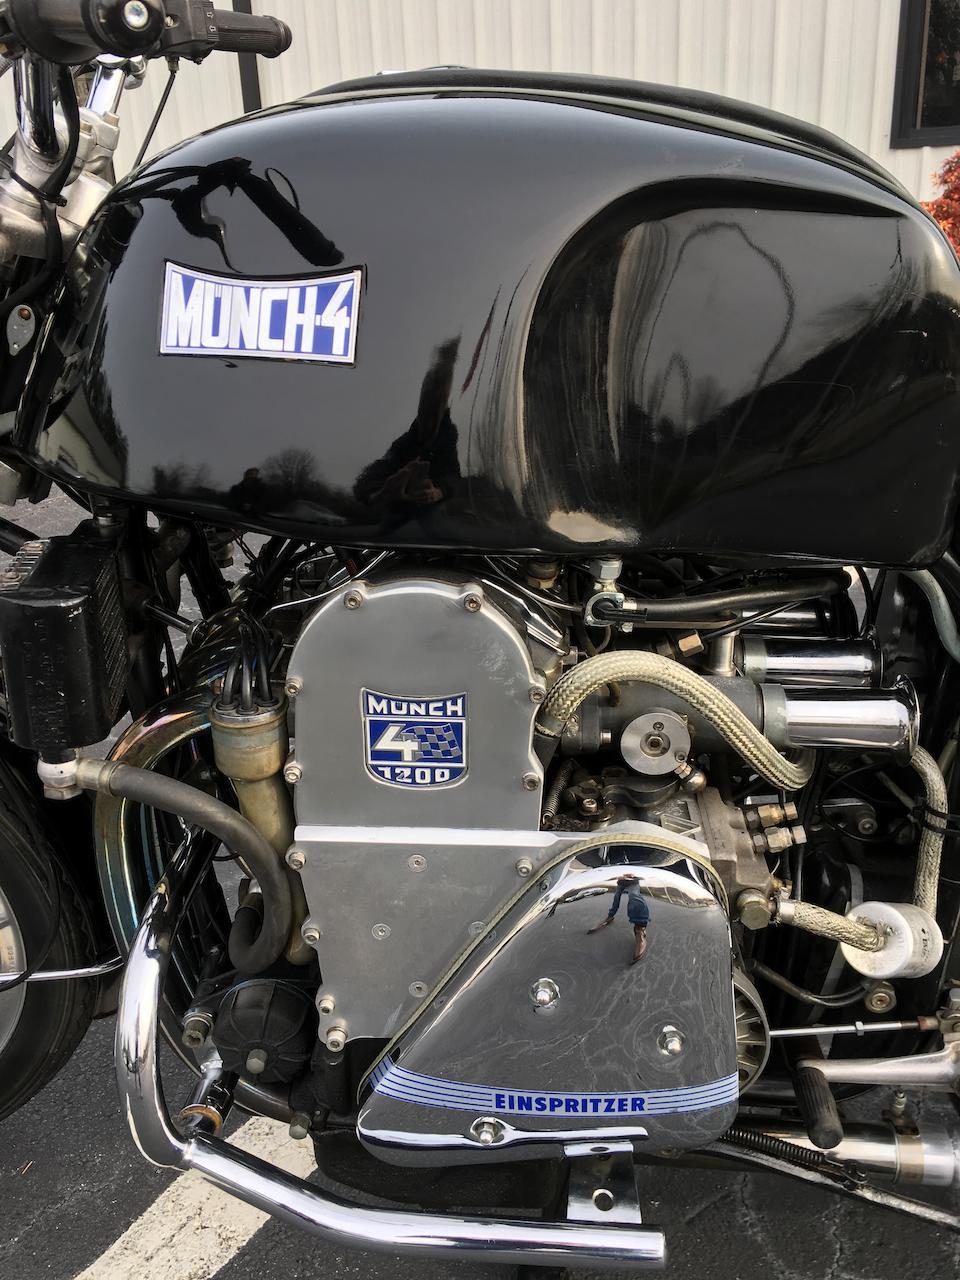 1974 M&#252;nch Mammoth TTS-E 1200  Frame no. 405X246 Engine no. 405X246